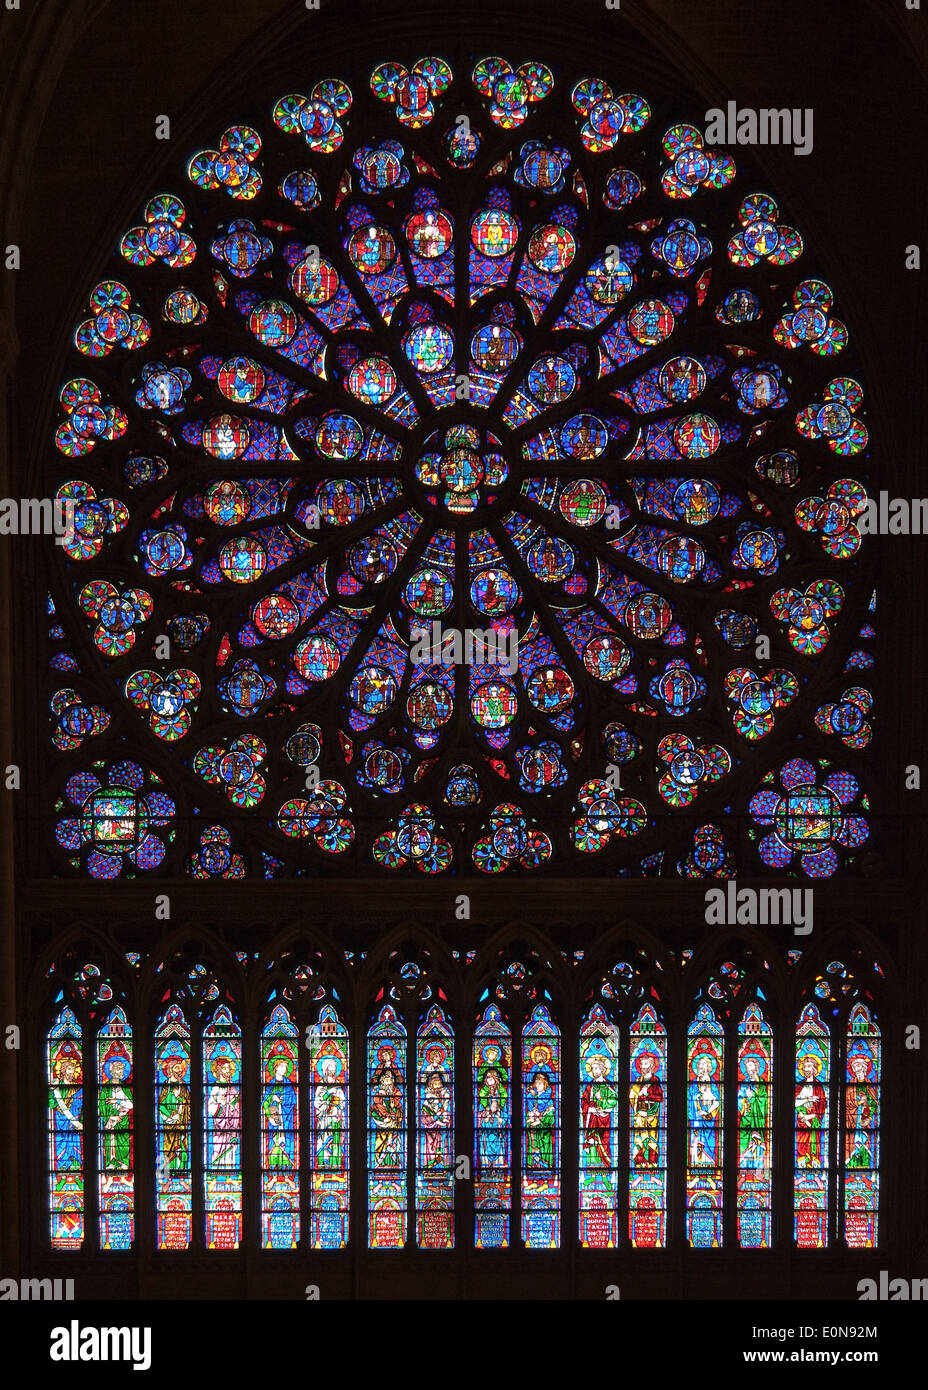 Mosaik in Notre Dame, Paris, Frankreich - Mosaic in Notre Dame in Paris, France Stock Photo